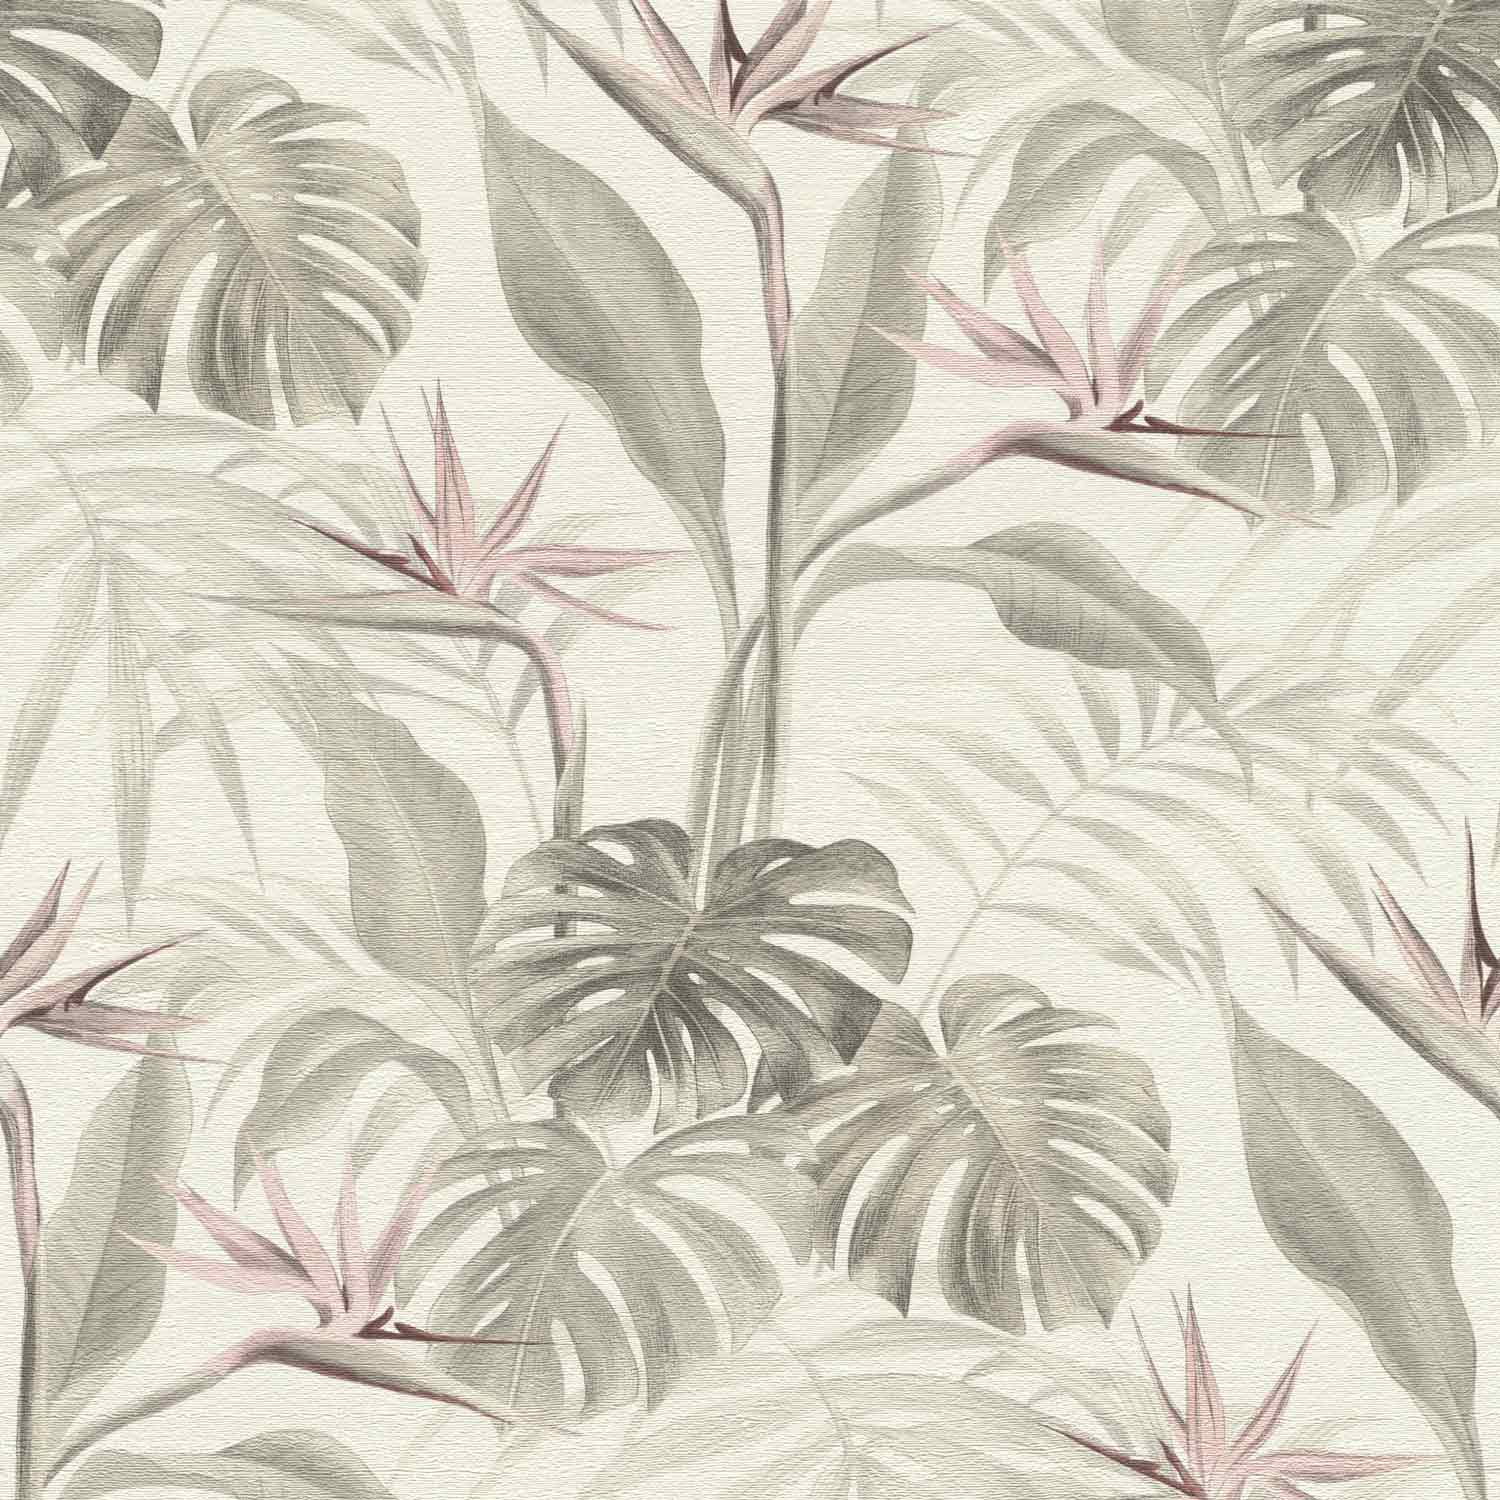 Rasch Non-woven Wallpaper Tropical Leaves Cream 529005 - Rasch 529029 , HD Wallpaper & Backgrounds